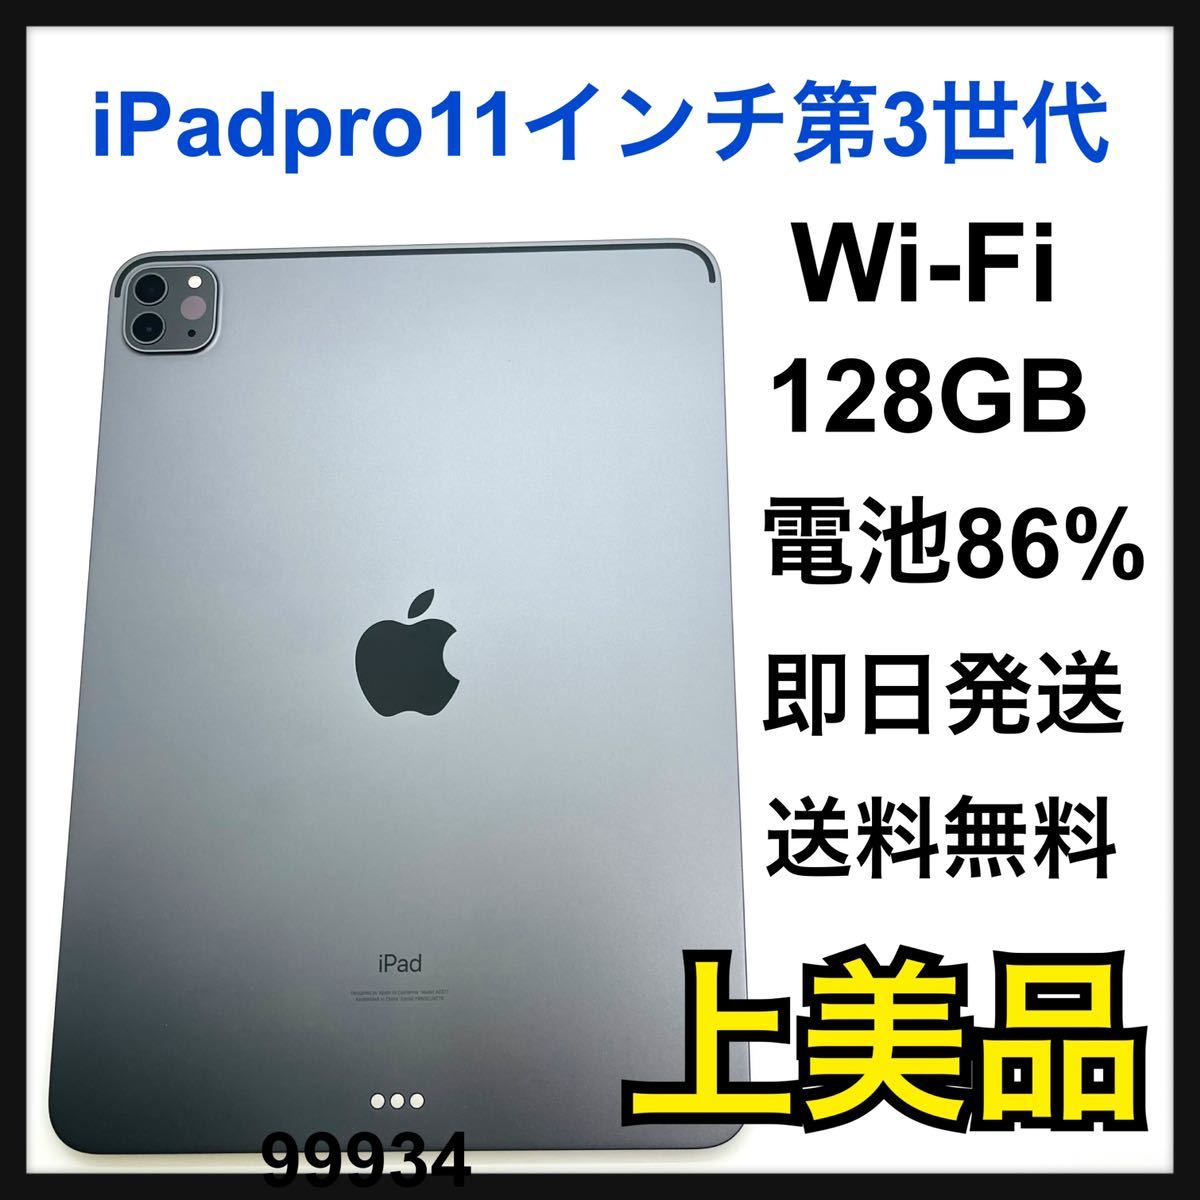 あなたにおすすめの商品 A iPad pro 11インチ 第3世代 128 GB SIM